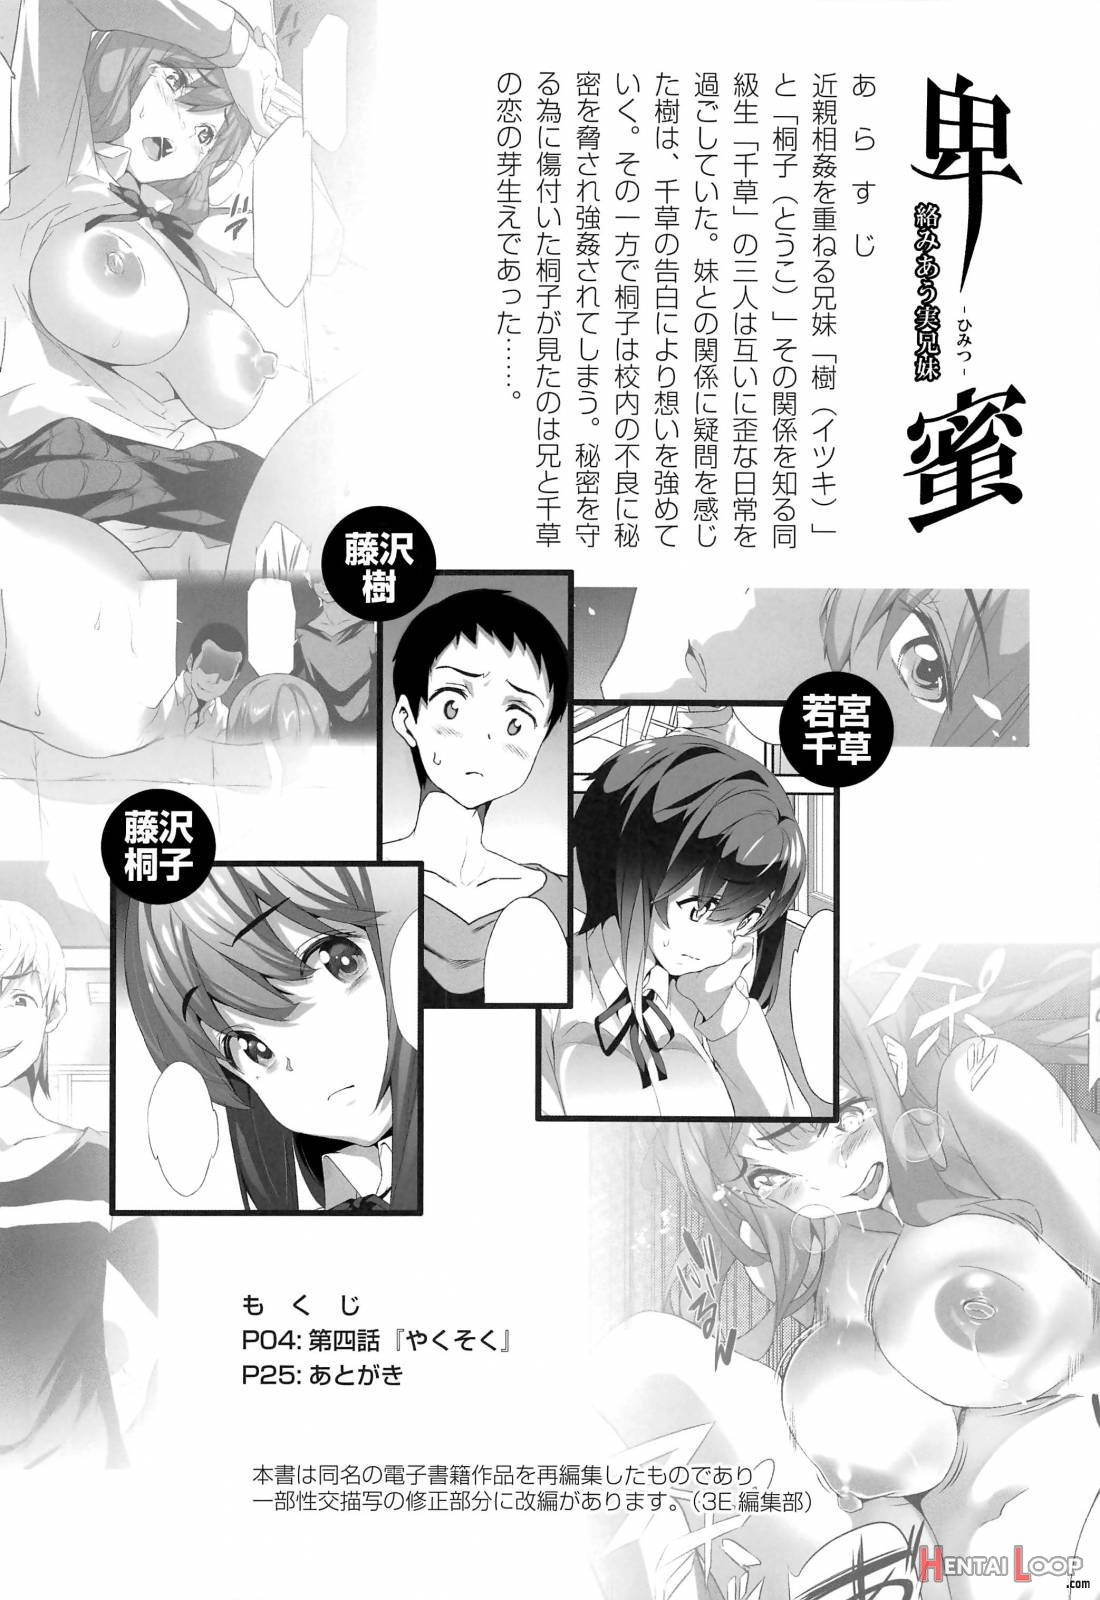 Himitsu 04 “Yakusoku” page 2